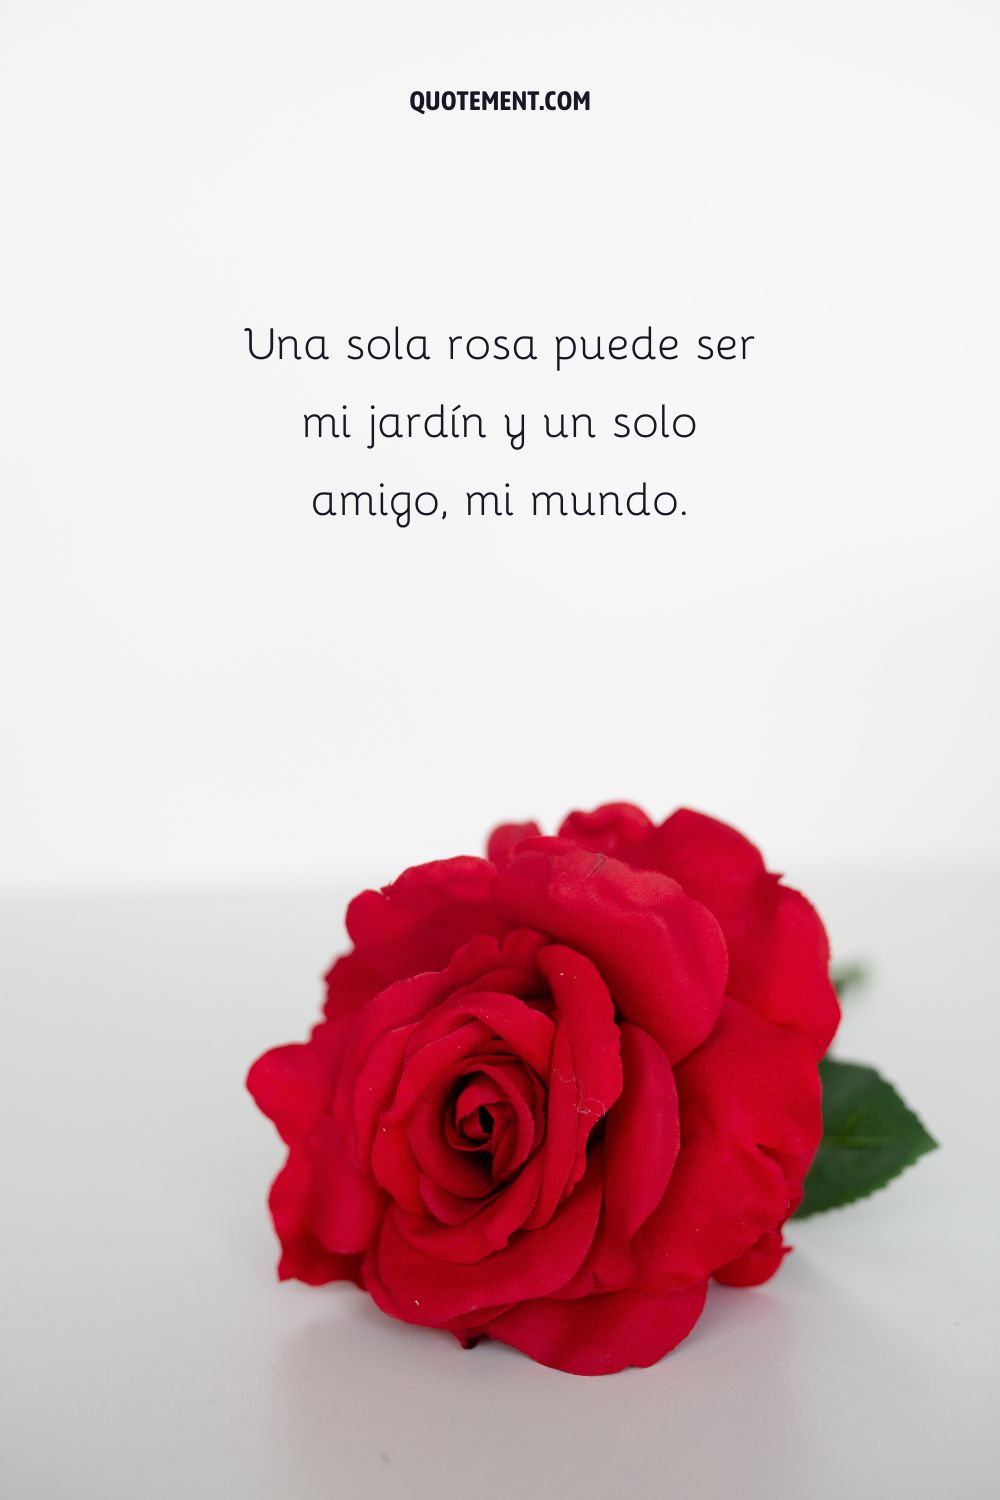 Una sola rosa puede ser mi jardín y un solo amigo, mi mundo.